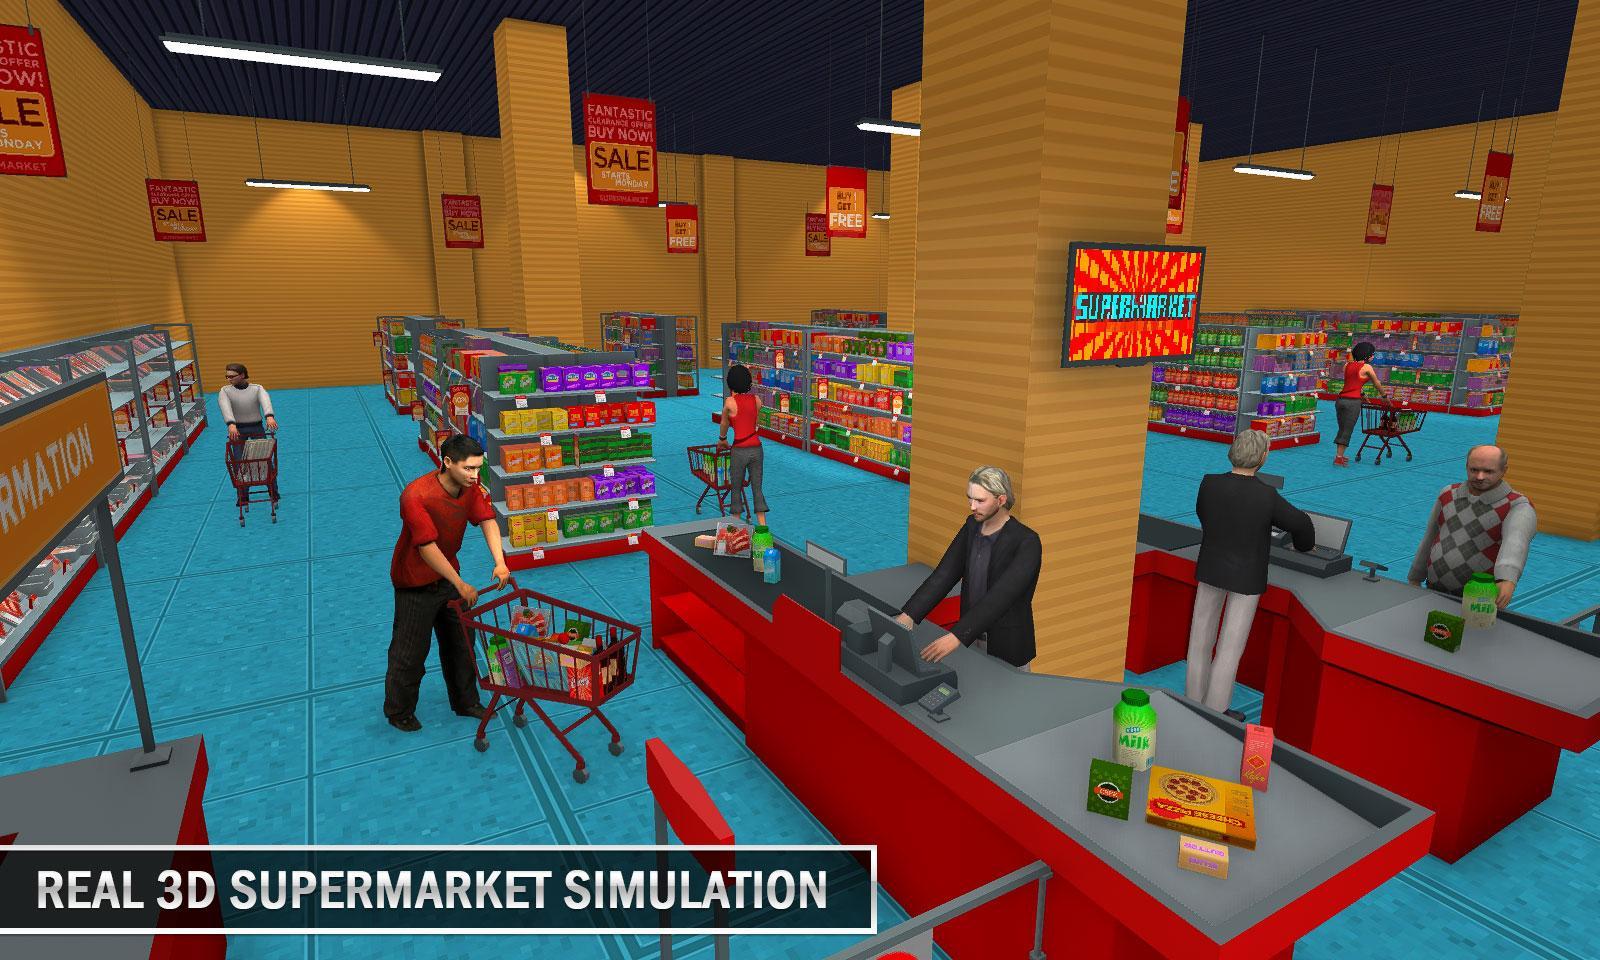 Supermarket simulator cheat engine. Игра продуктовый магазин. Мой супермаркет игра. Игры на тему магазины и здания. Супермаркет симулятор с улицы.